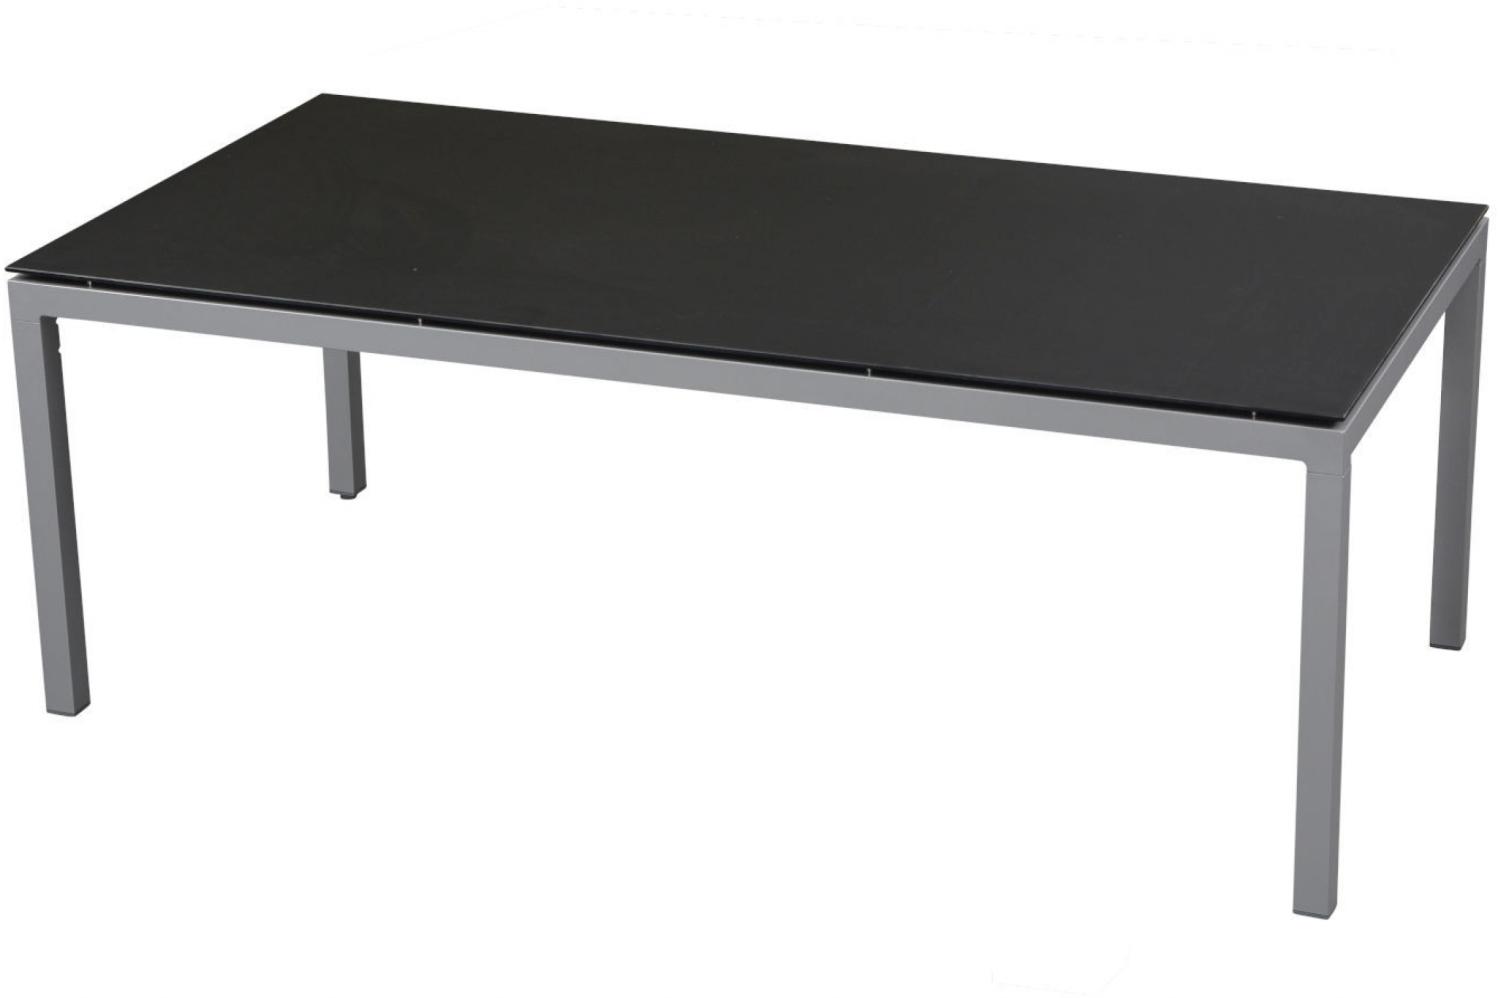 Inko Gartentisch Aluminium silber 200x100 cm Terrassentisch Tischplatte nach Wahl Deropal anthrazit Bild 1